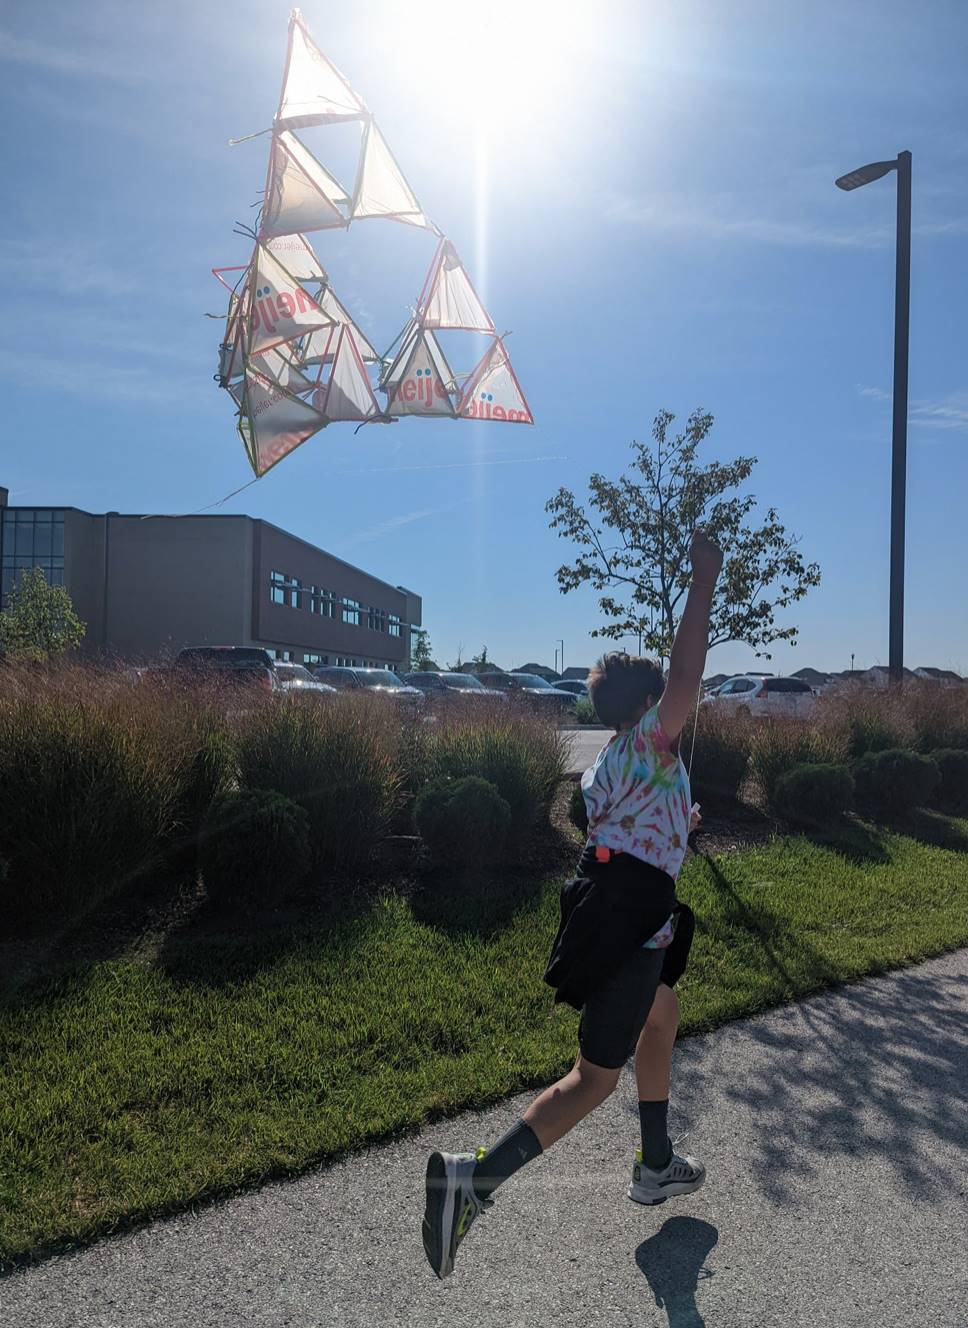 Student flying kite